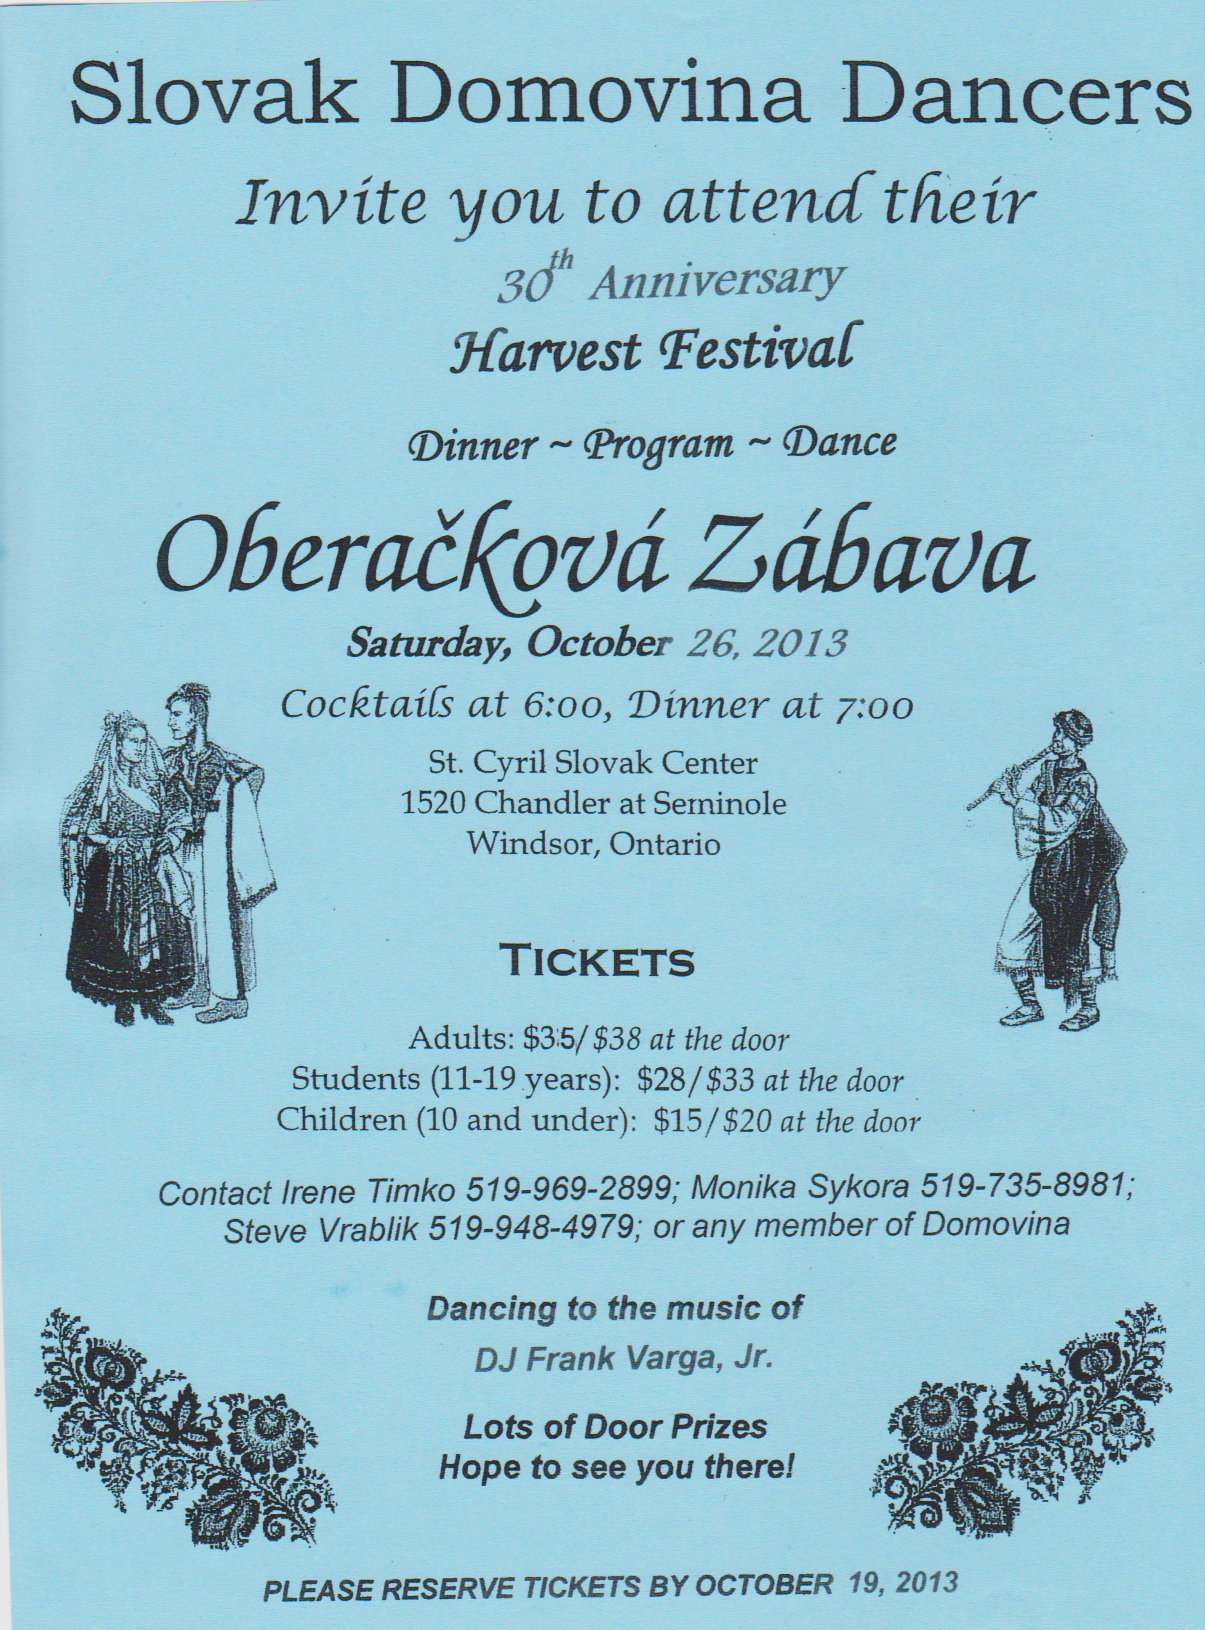 Harvest Festival / Oberakov zbava 2013 - 30. ronk